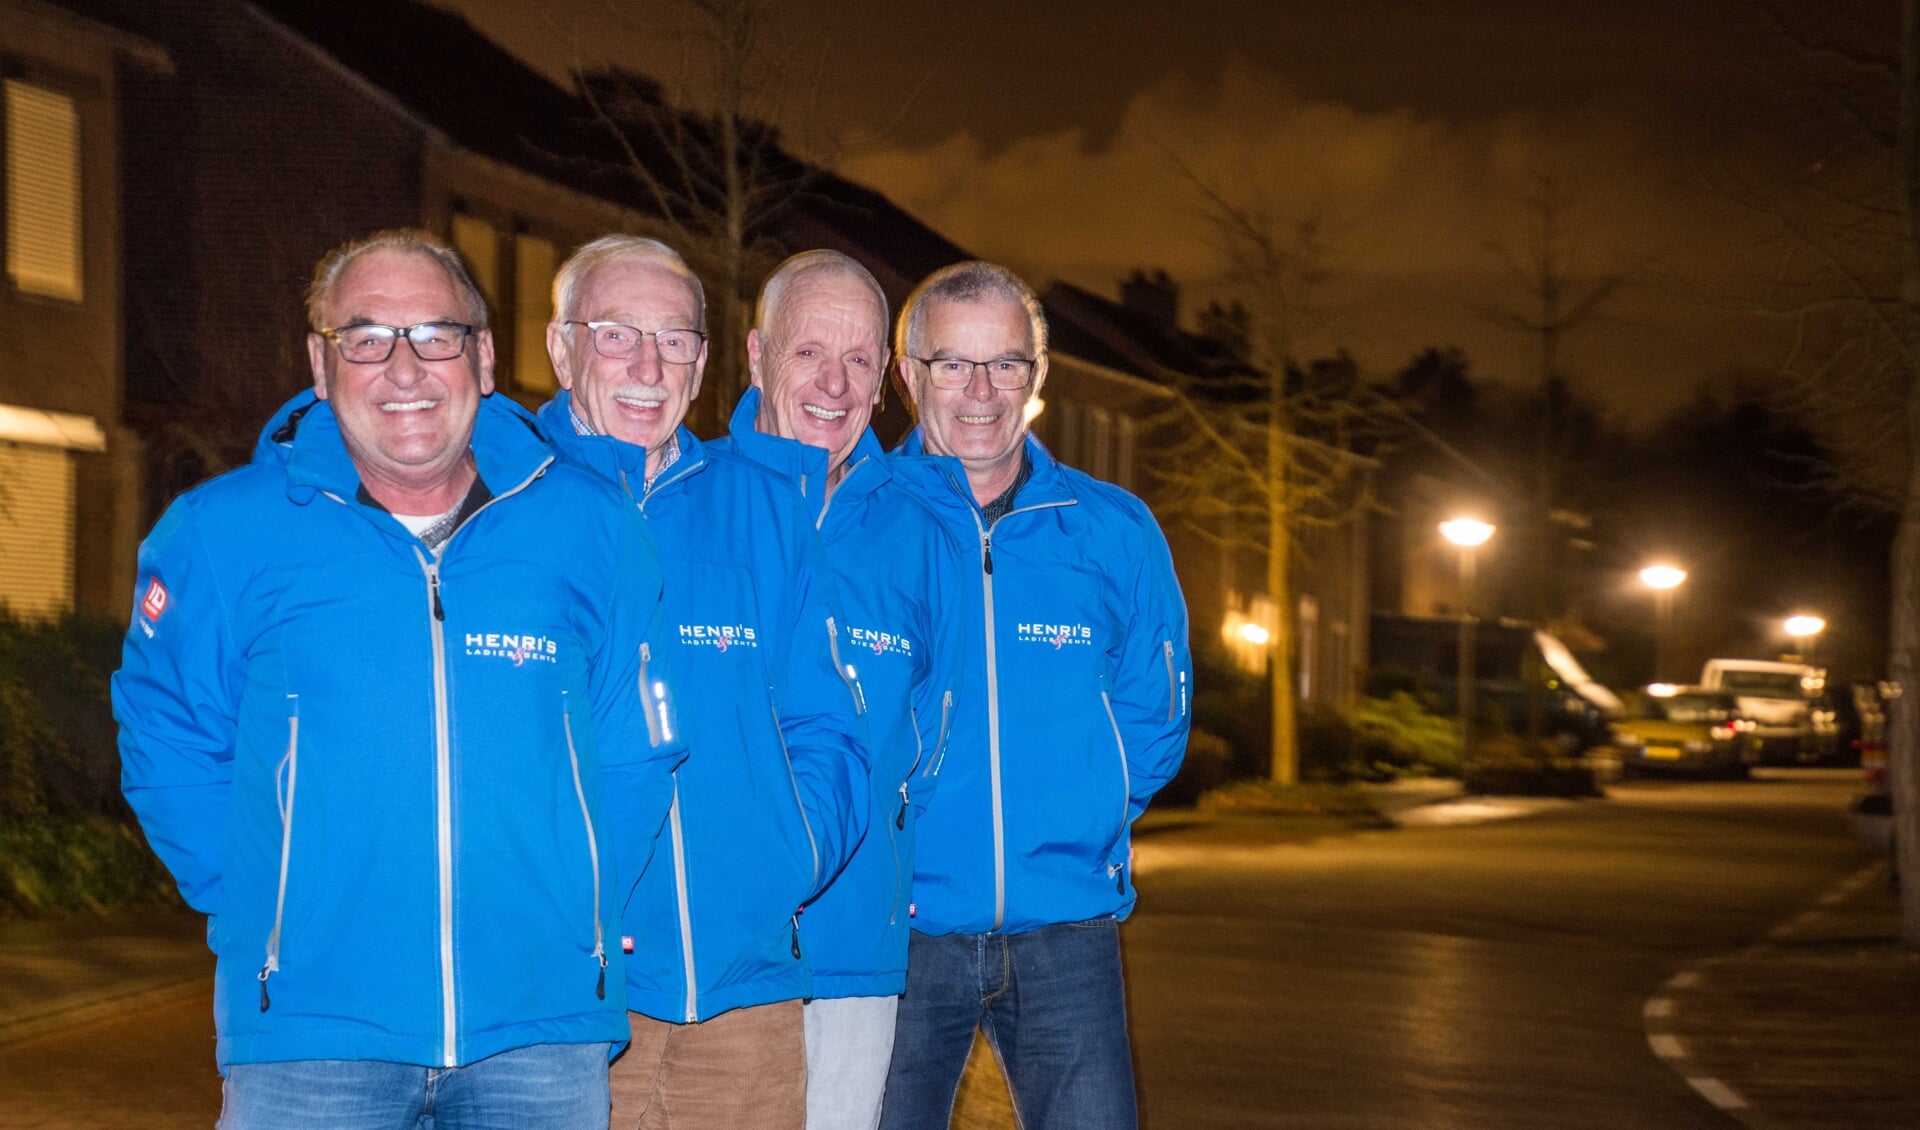 Cees van Wijk, Raymond Hugens, Bertus Linders en Christ Melissen: over enthousiaste vrijwilligers gesproken!